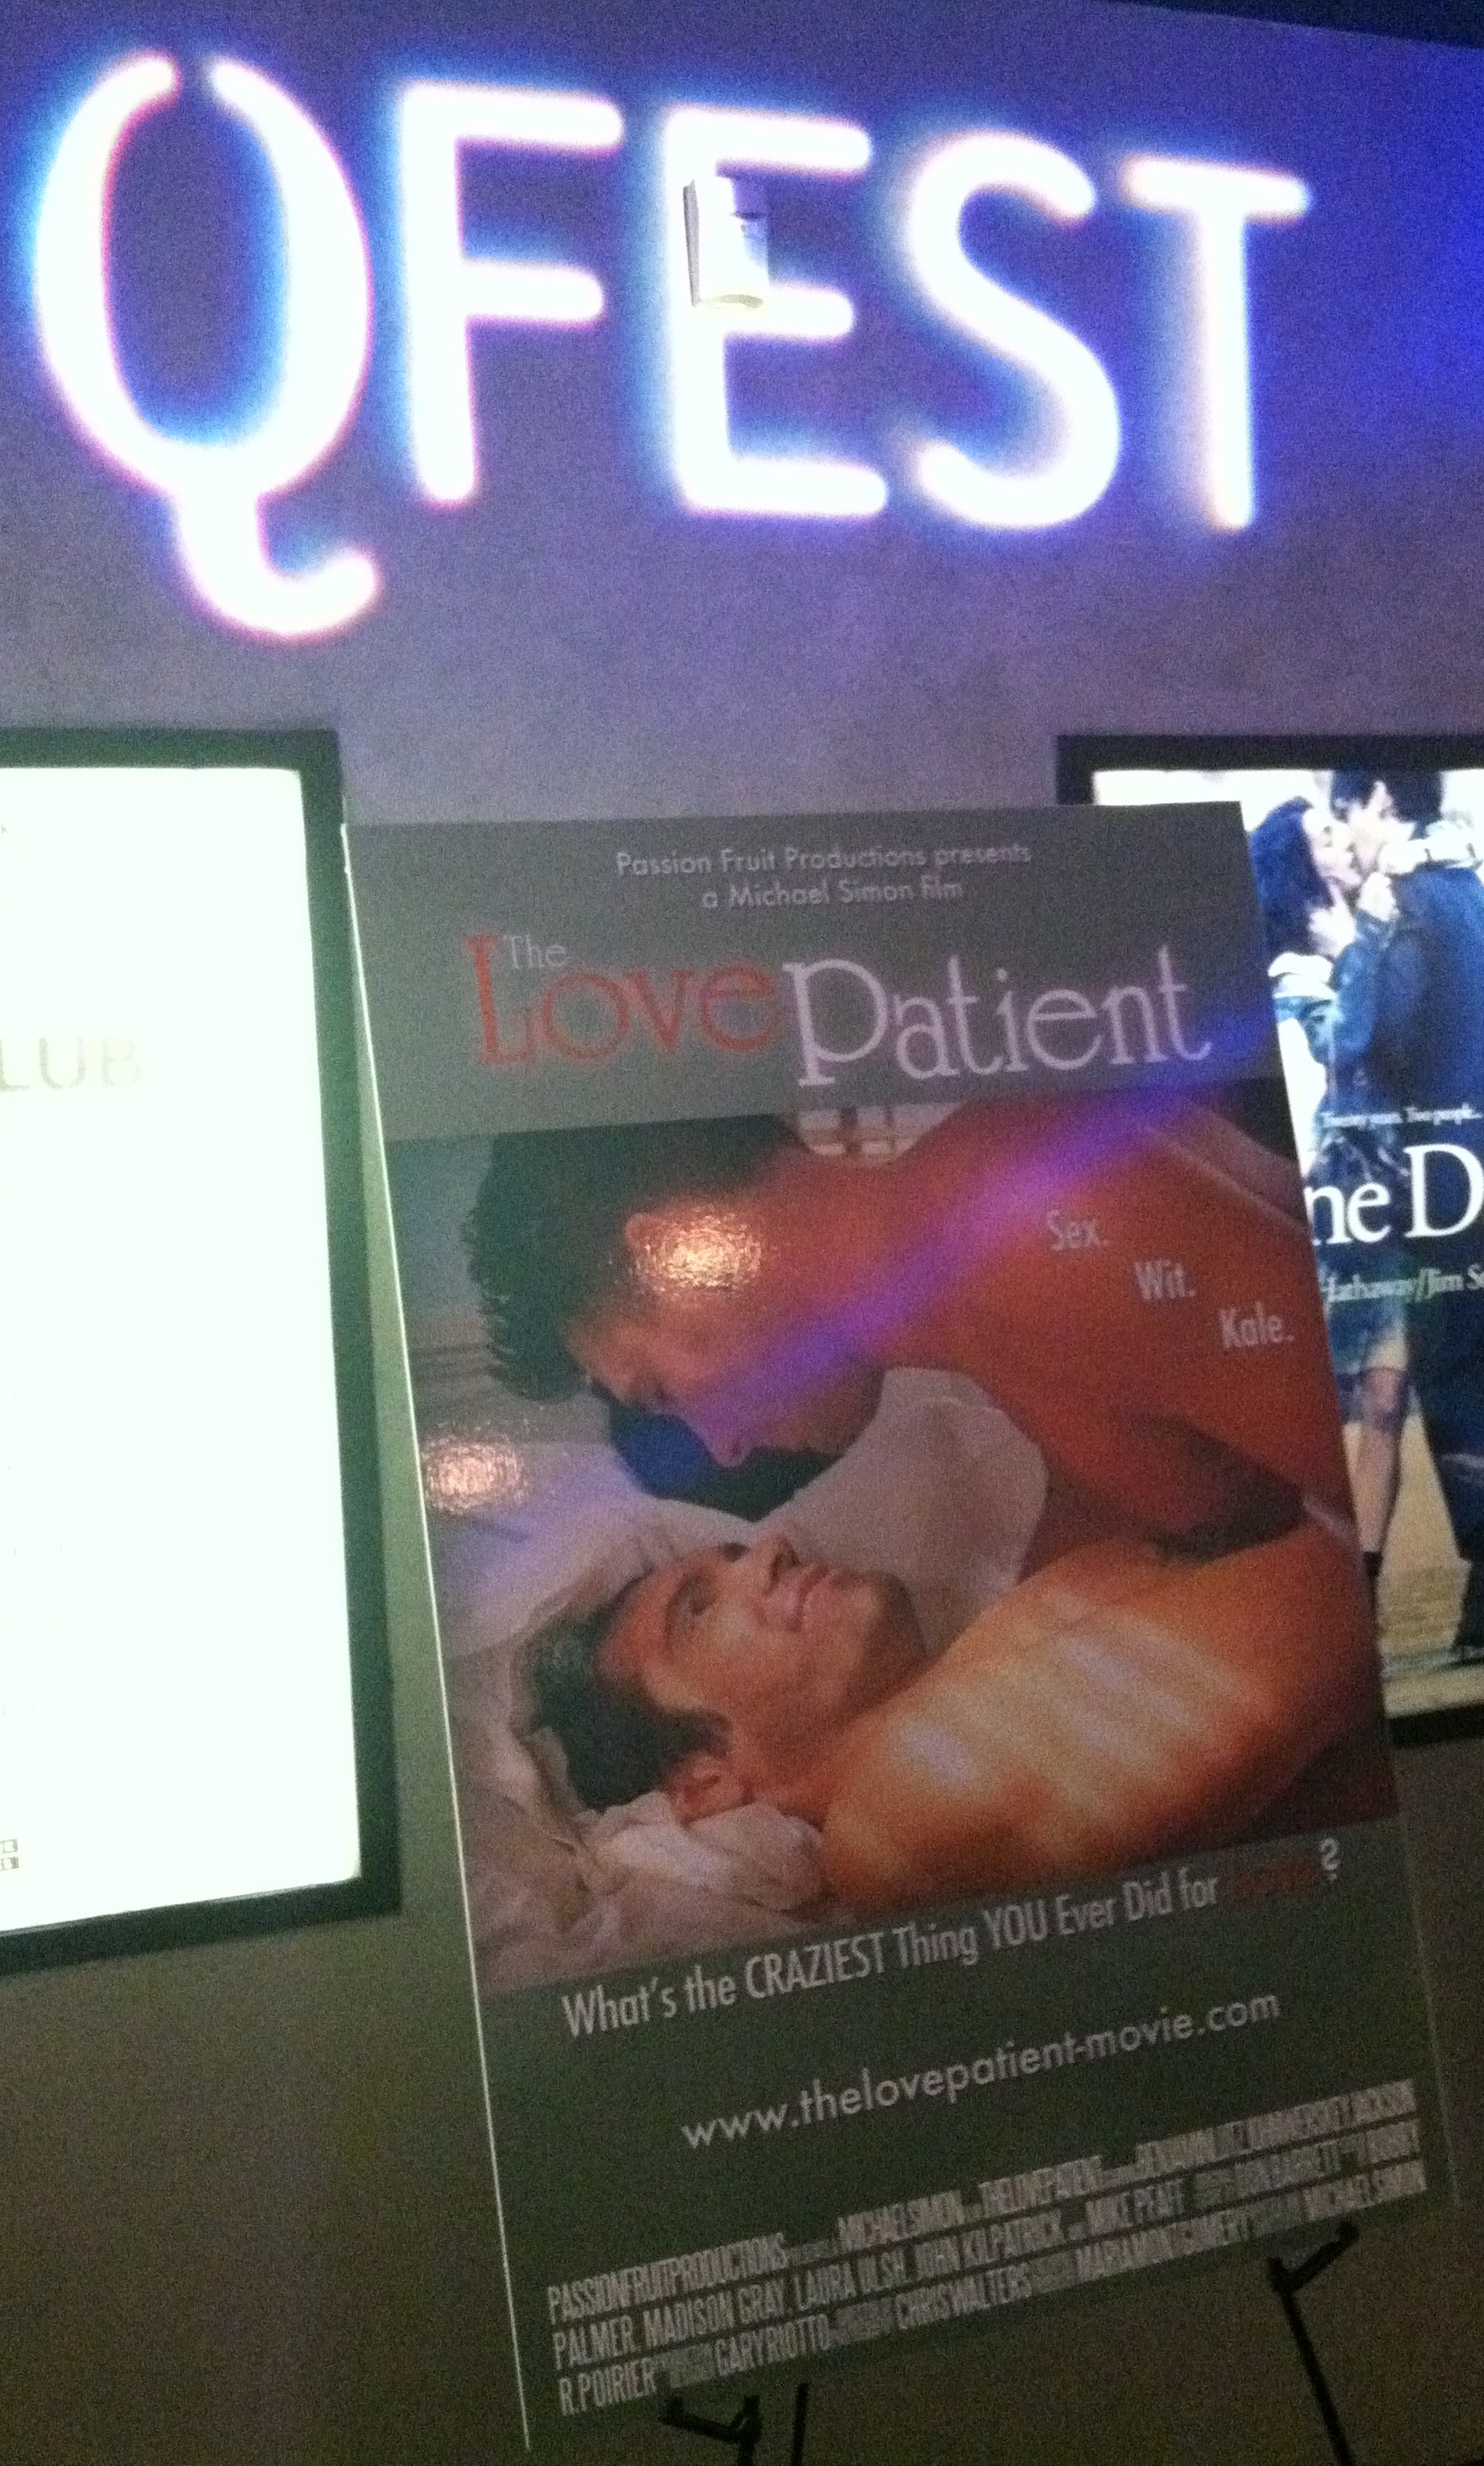 THE LOVE PATIENT world premier, Q-fest, Philadelphia, PA 2011.